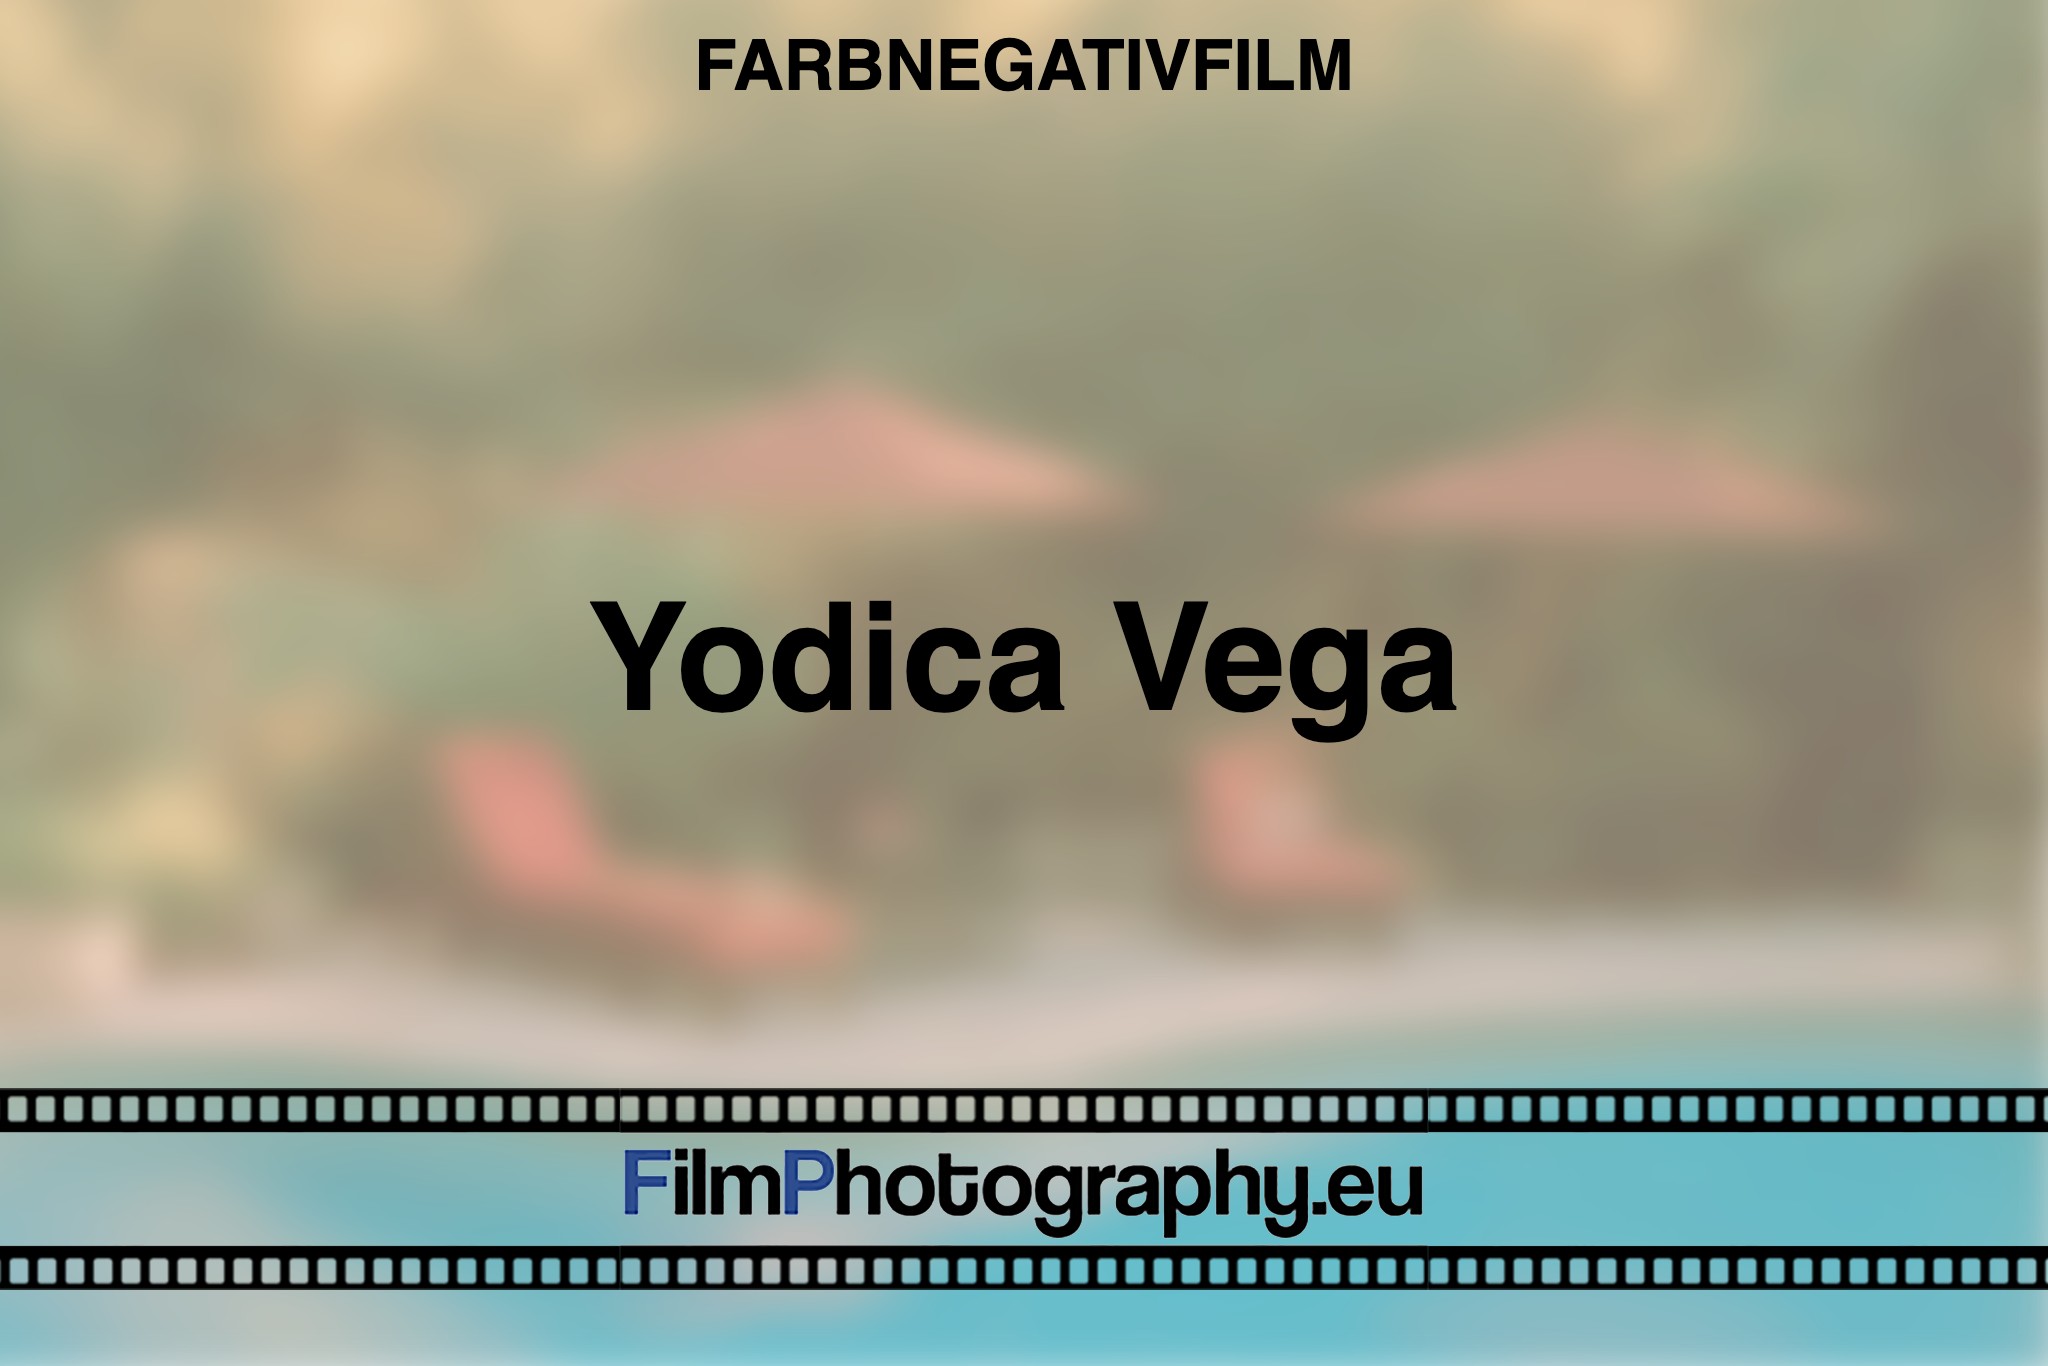 yodica-vega-farbnegativfilm-bnv